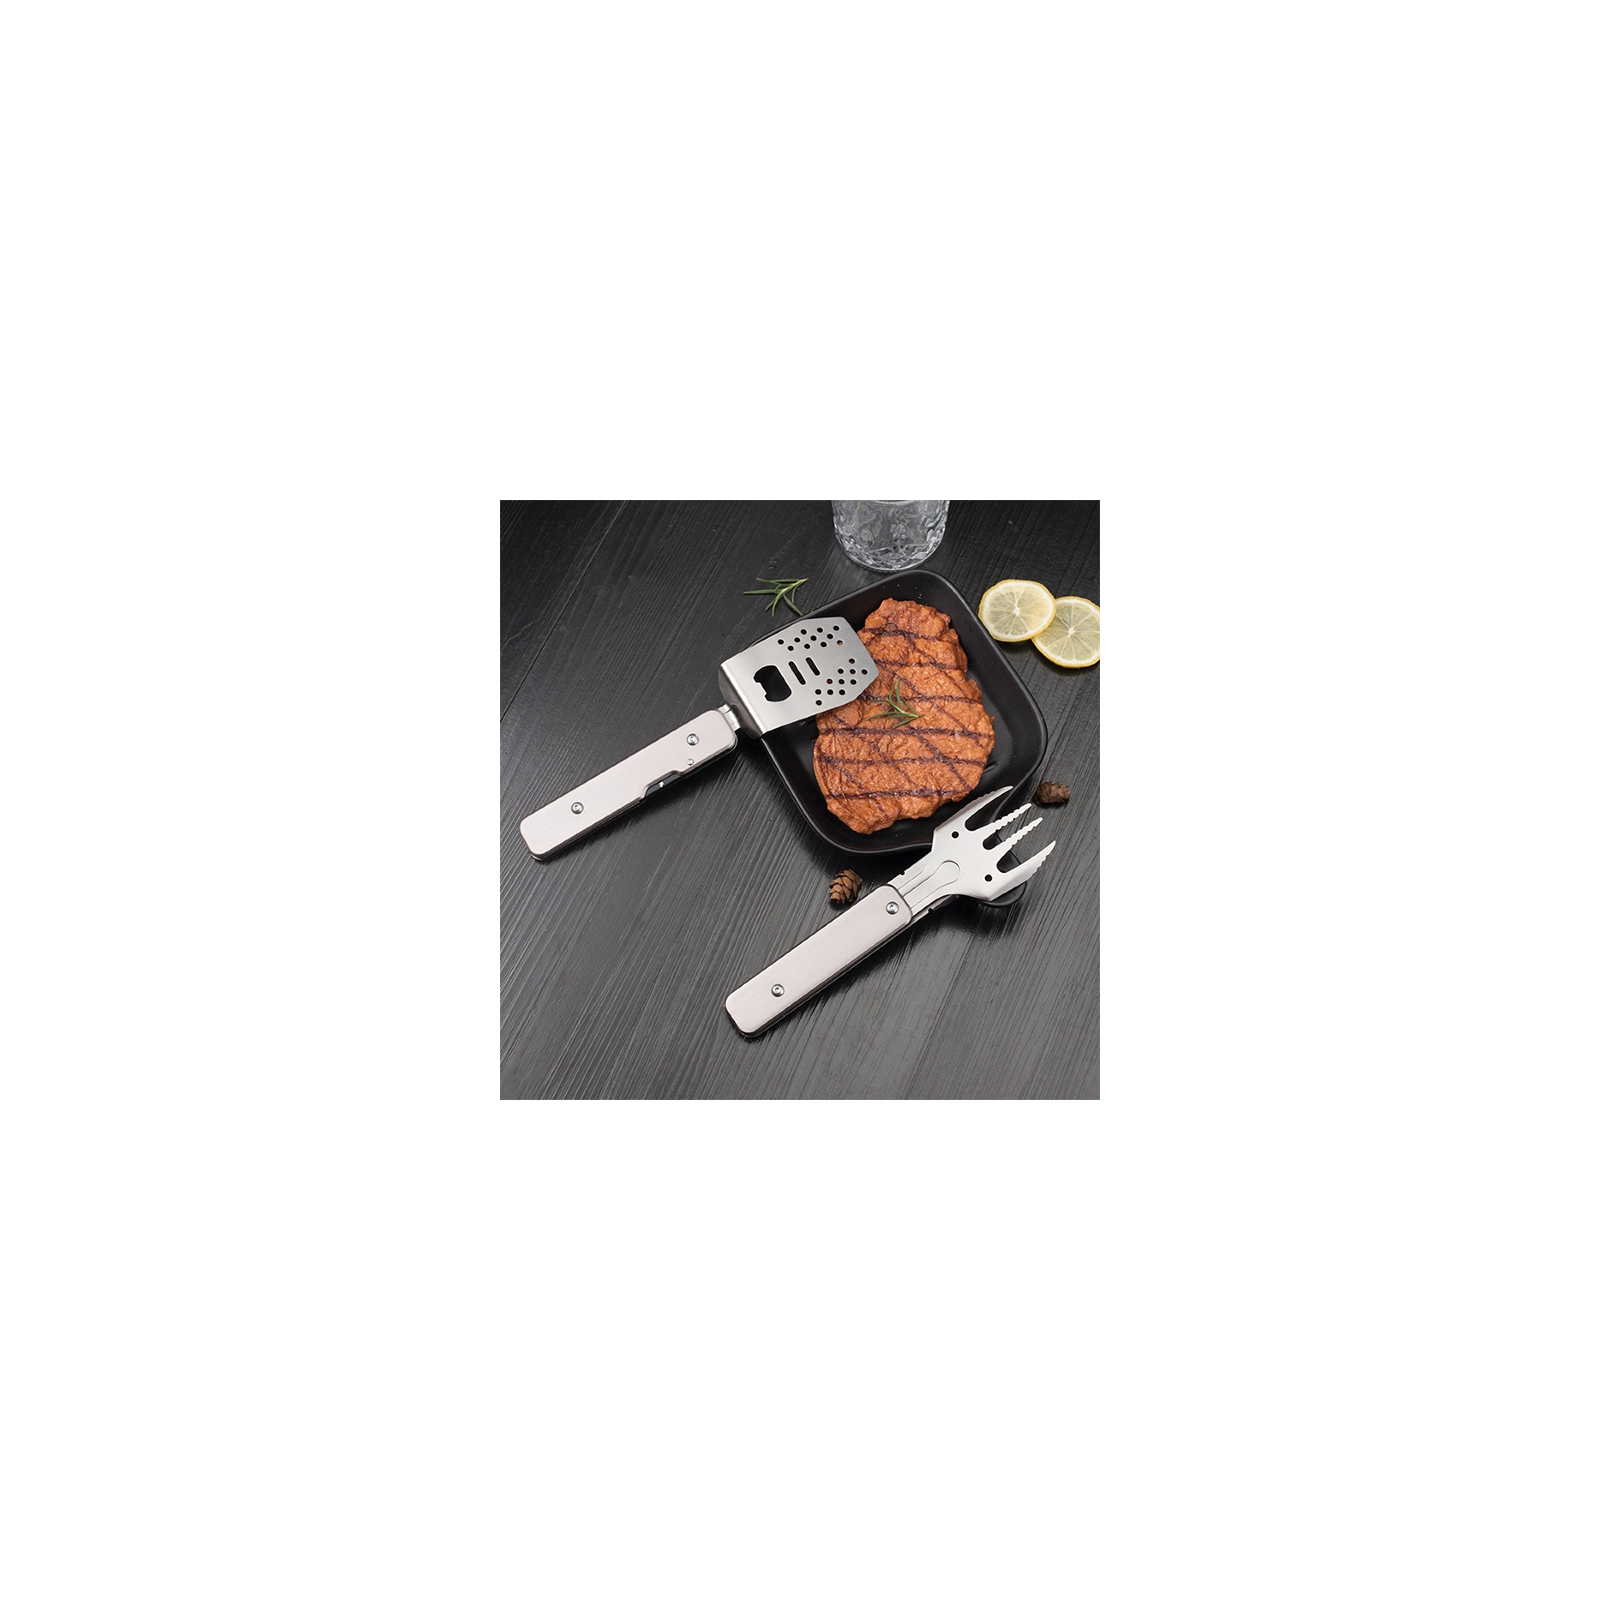 Мультитул Roxon мини набор для барбекю Grey (S602G) изображение 3